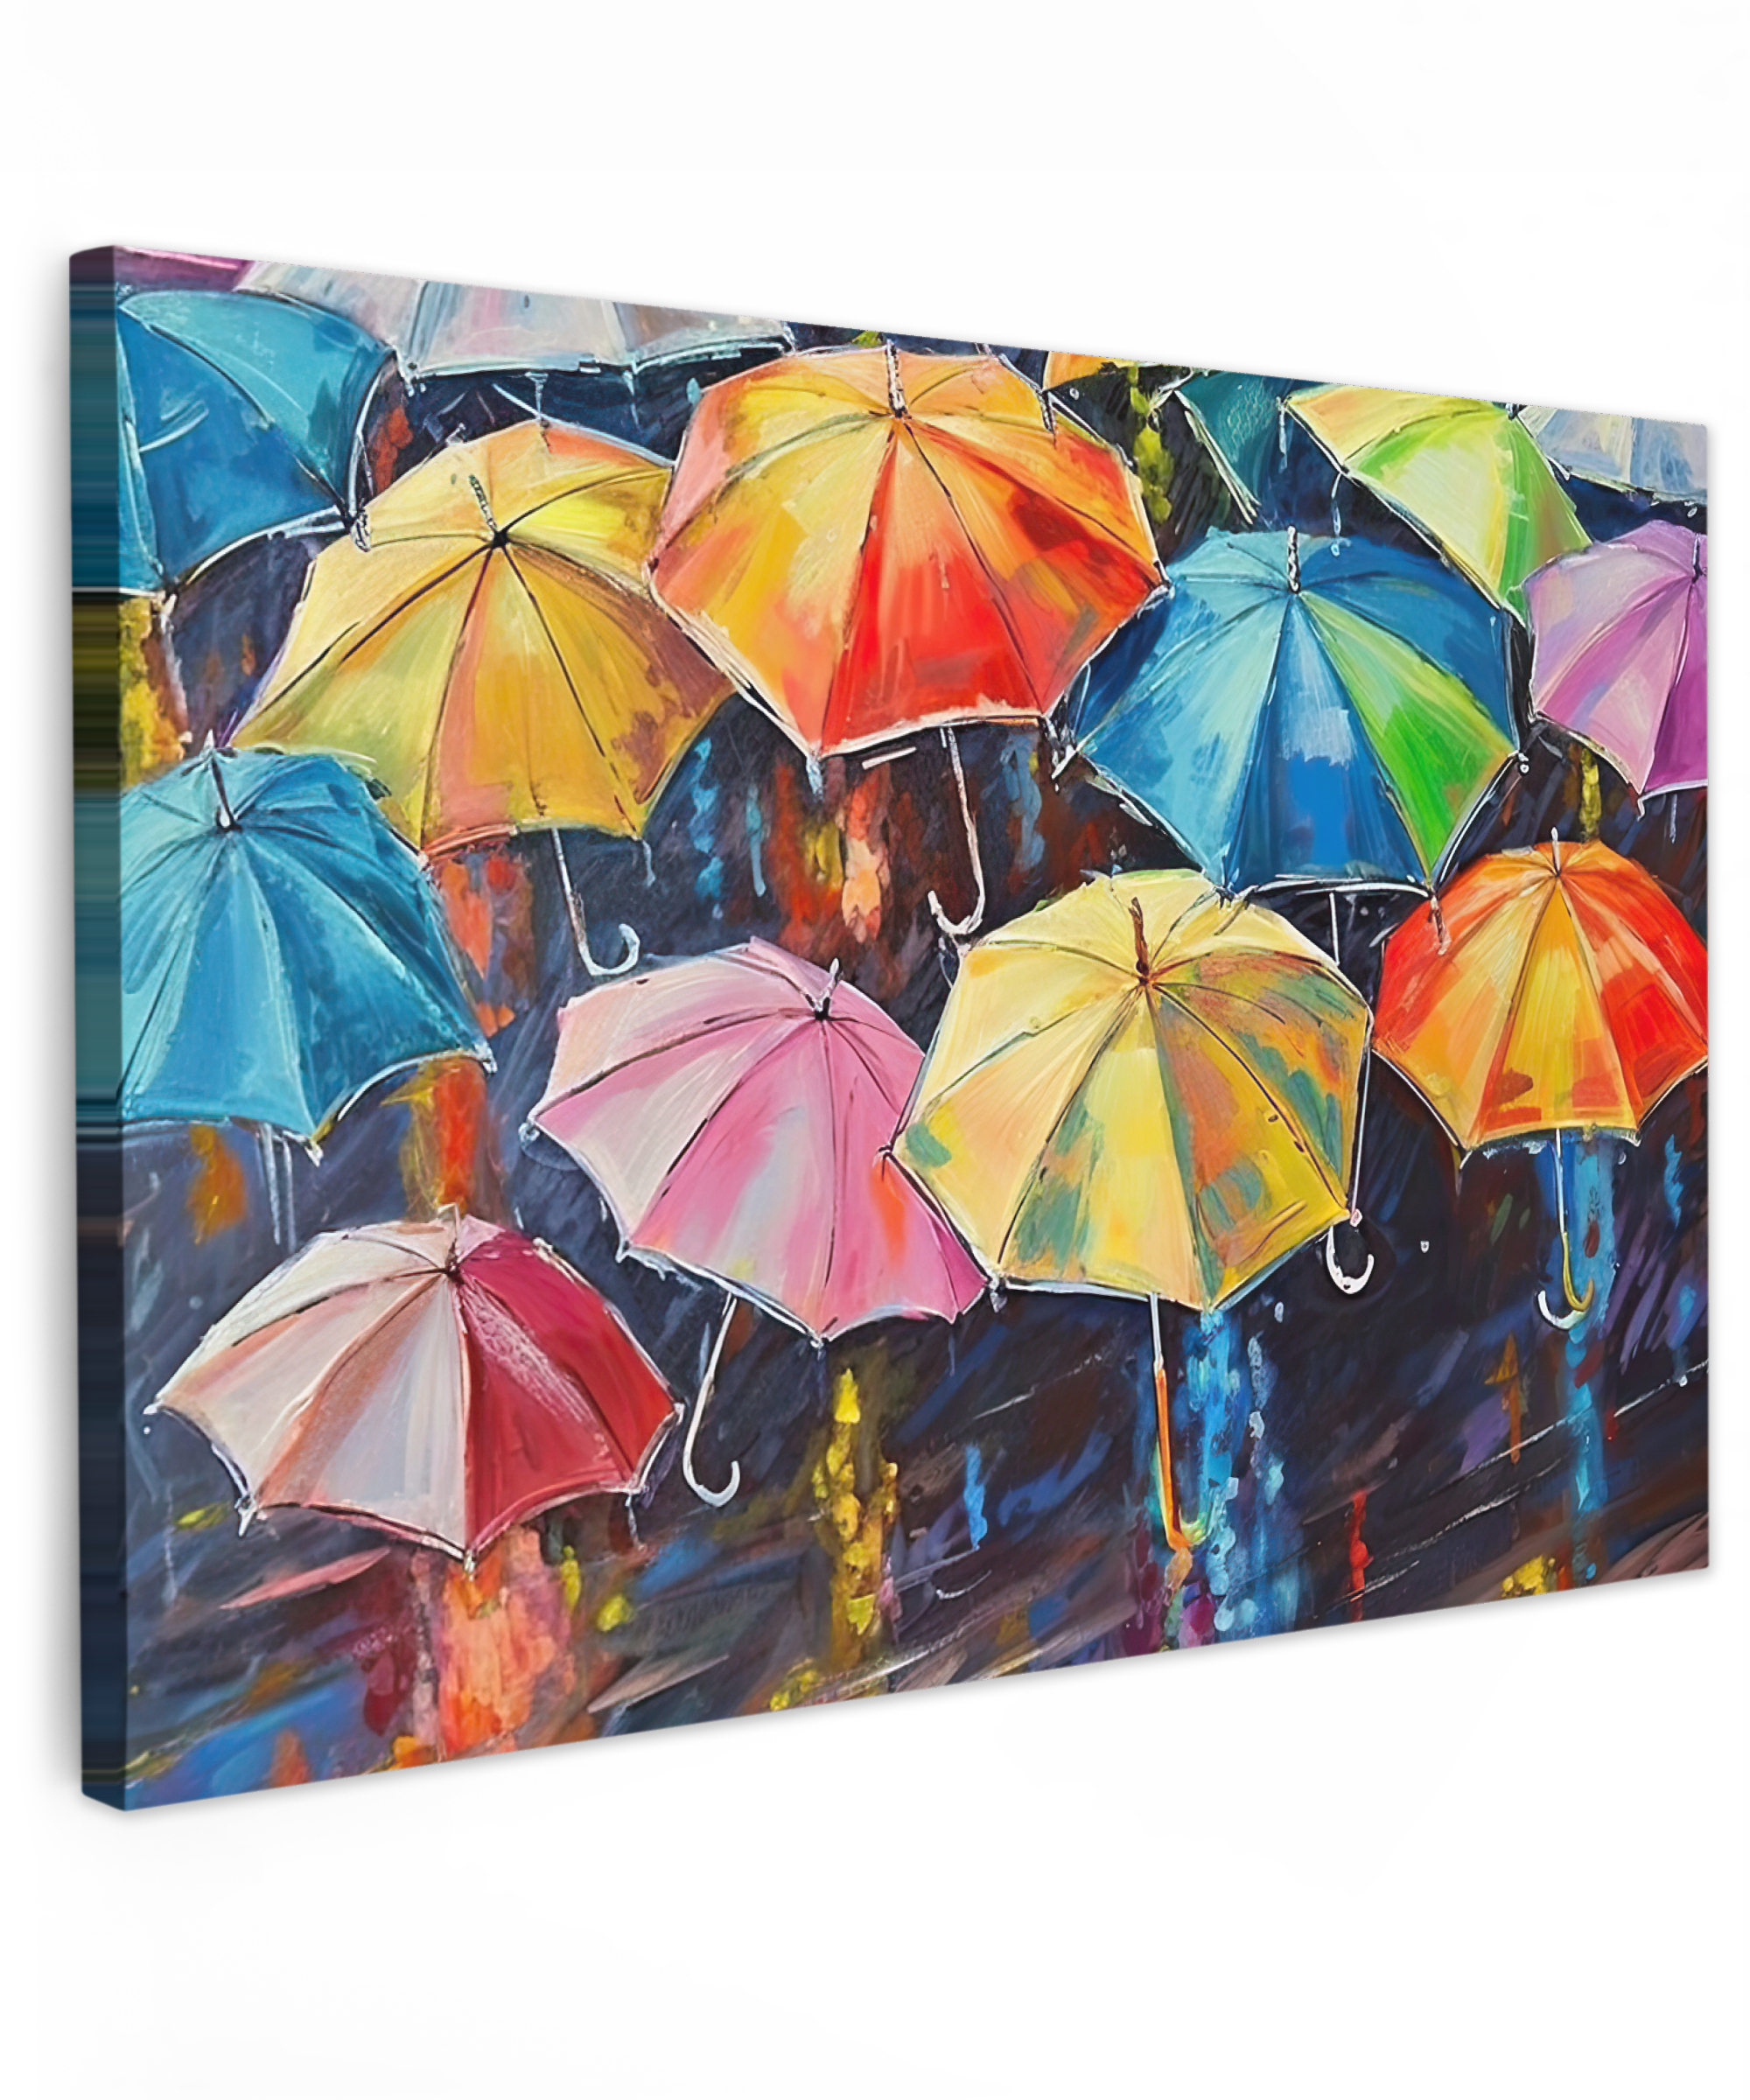 Leinwandbild - Regenschirme - Gemälde - Kunst - Regenbogen